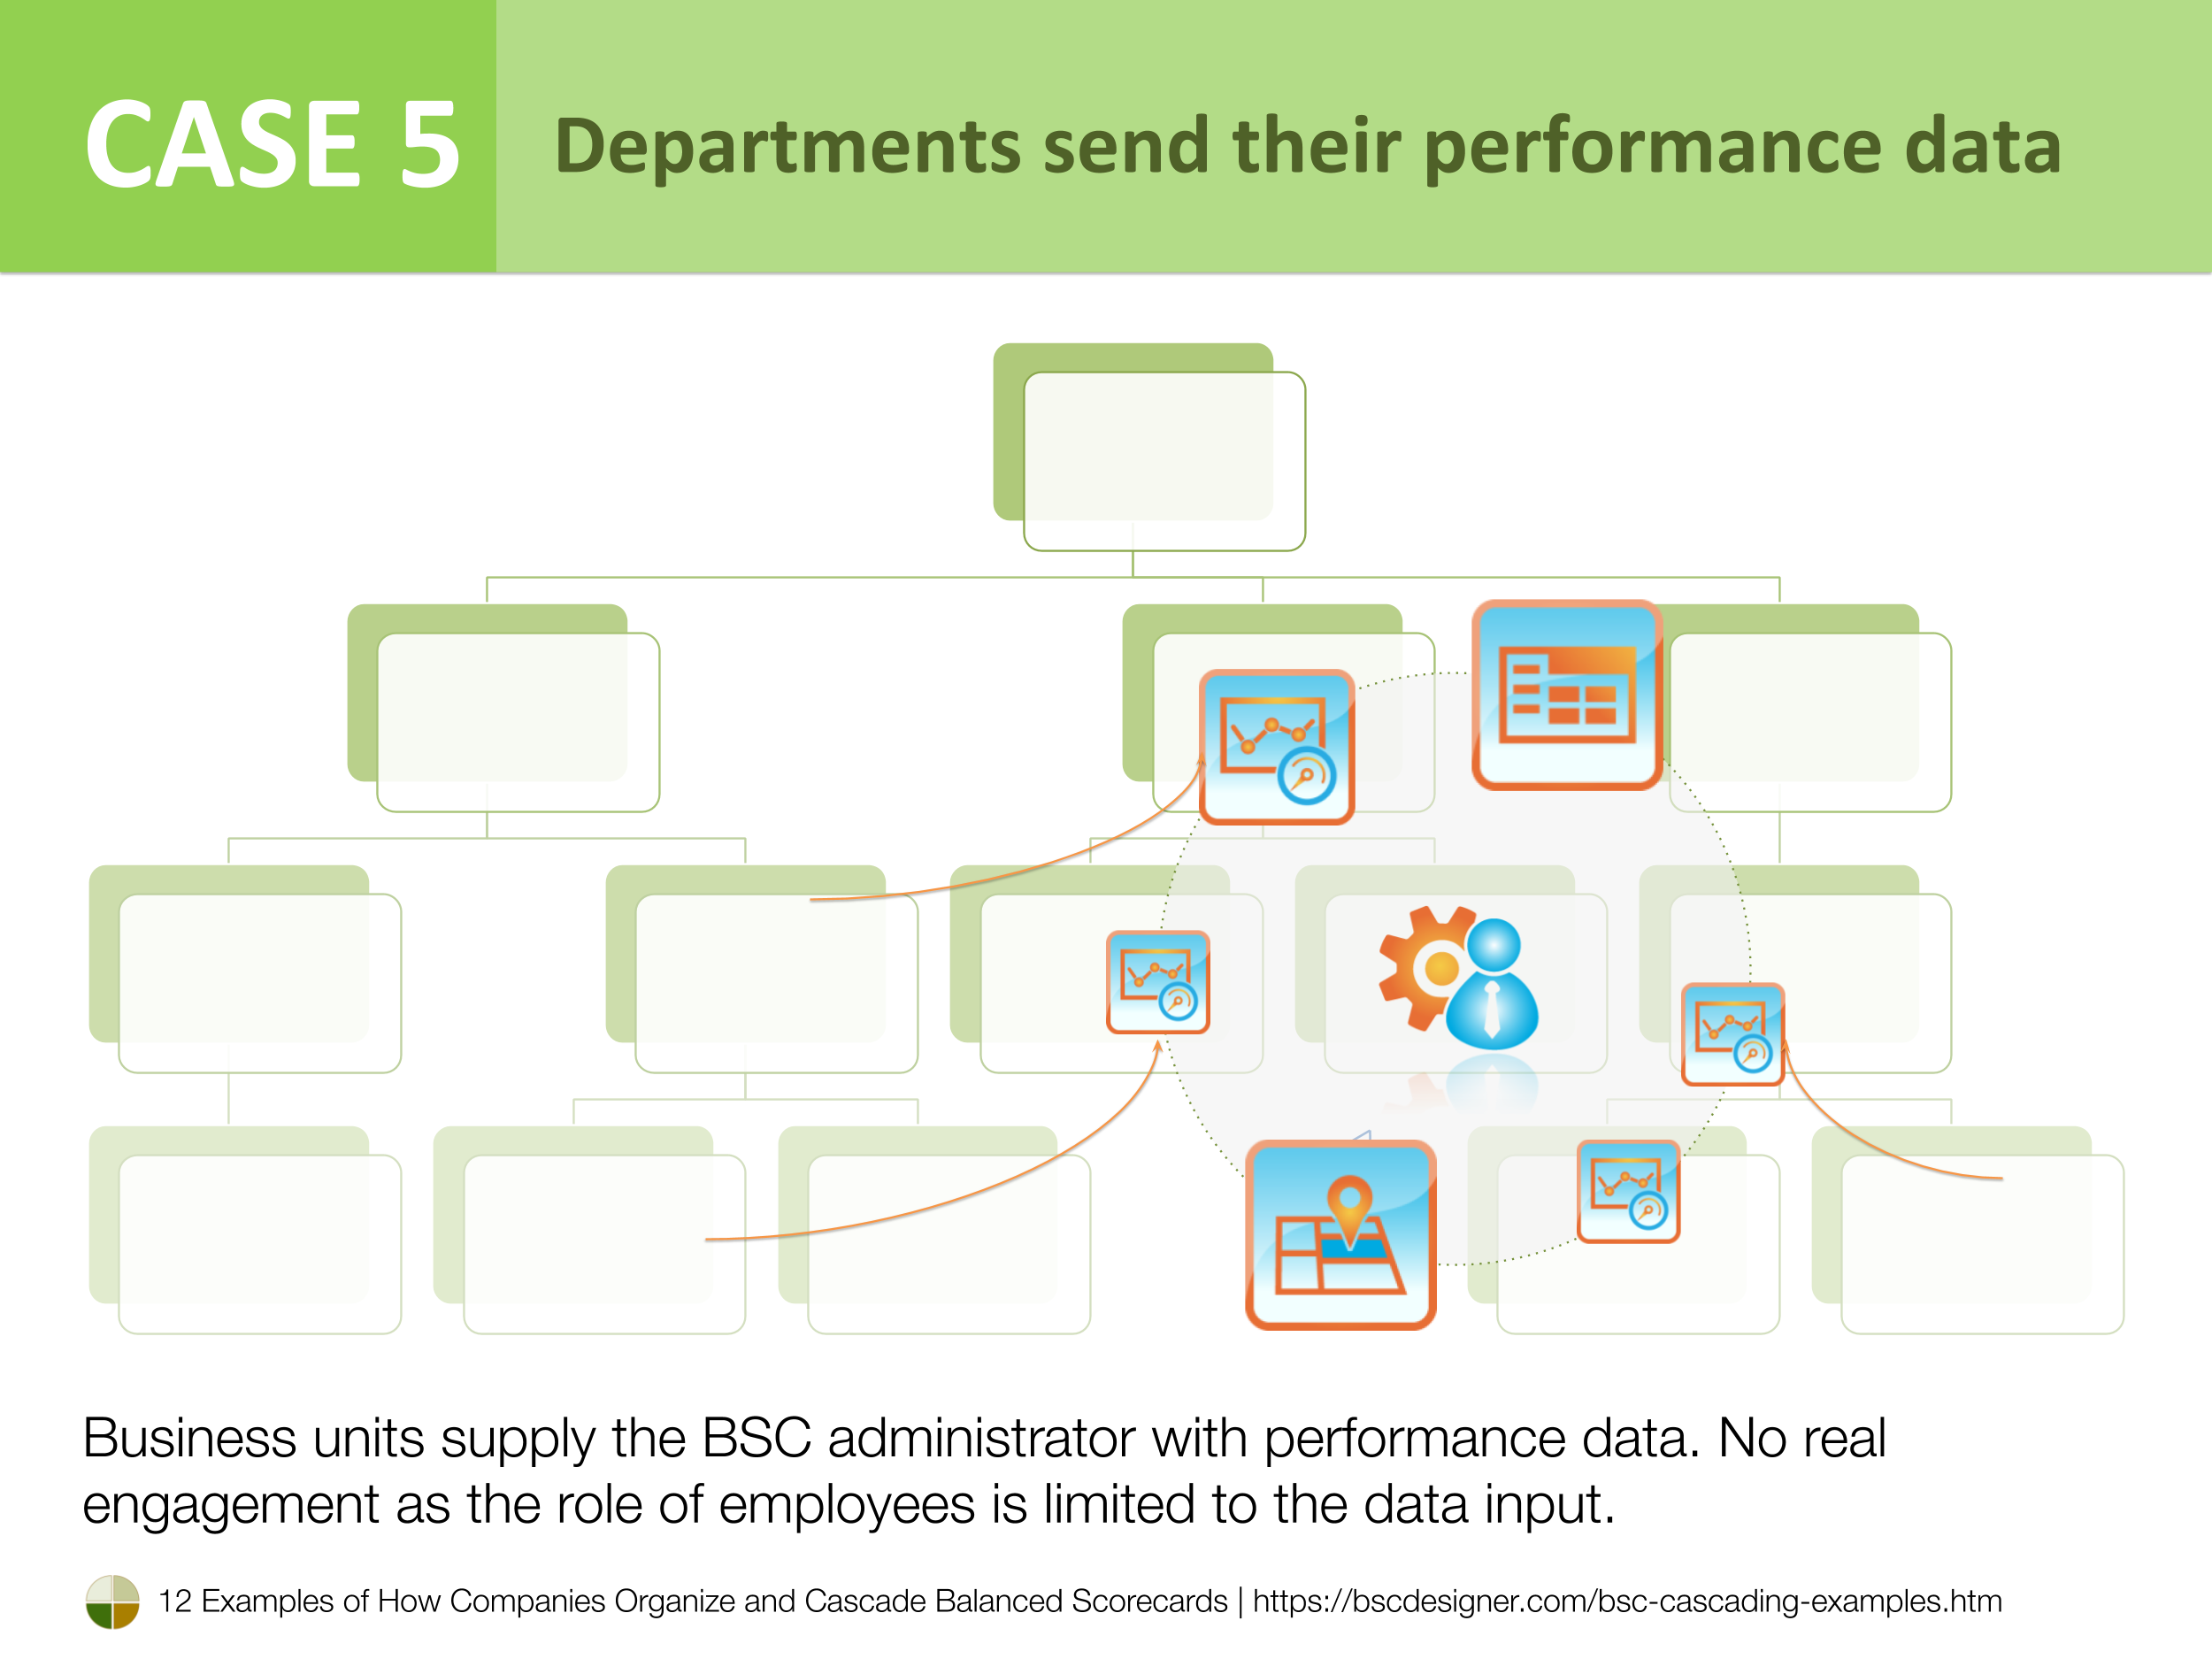 Cas 5 - Les départements envoient leurs données de performance